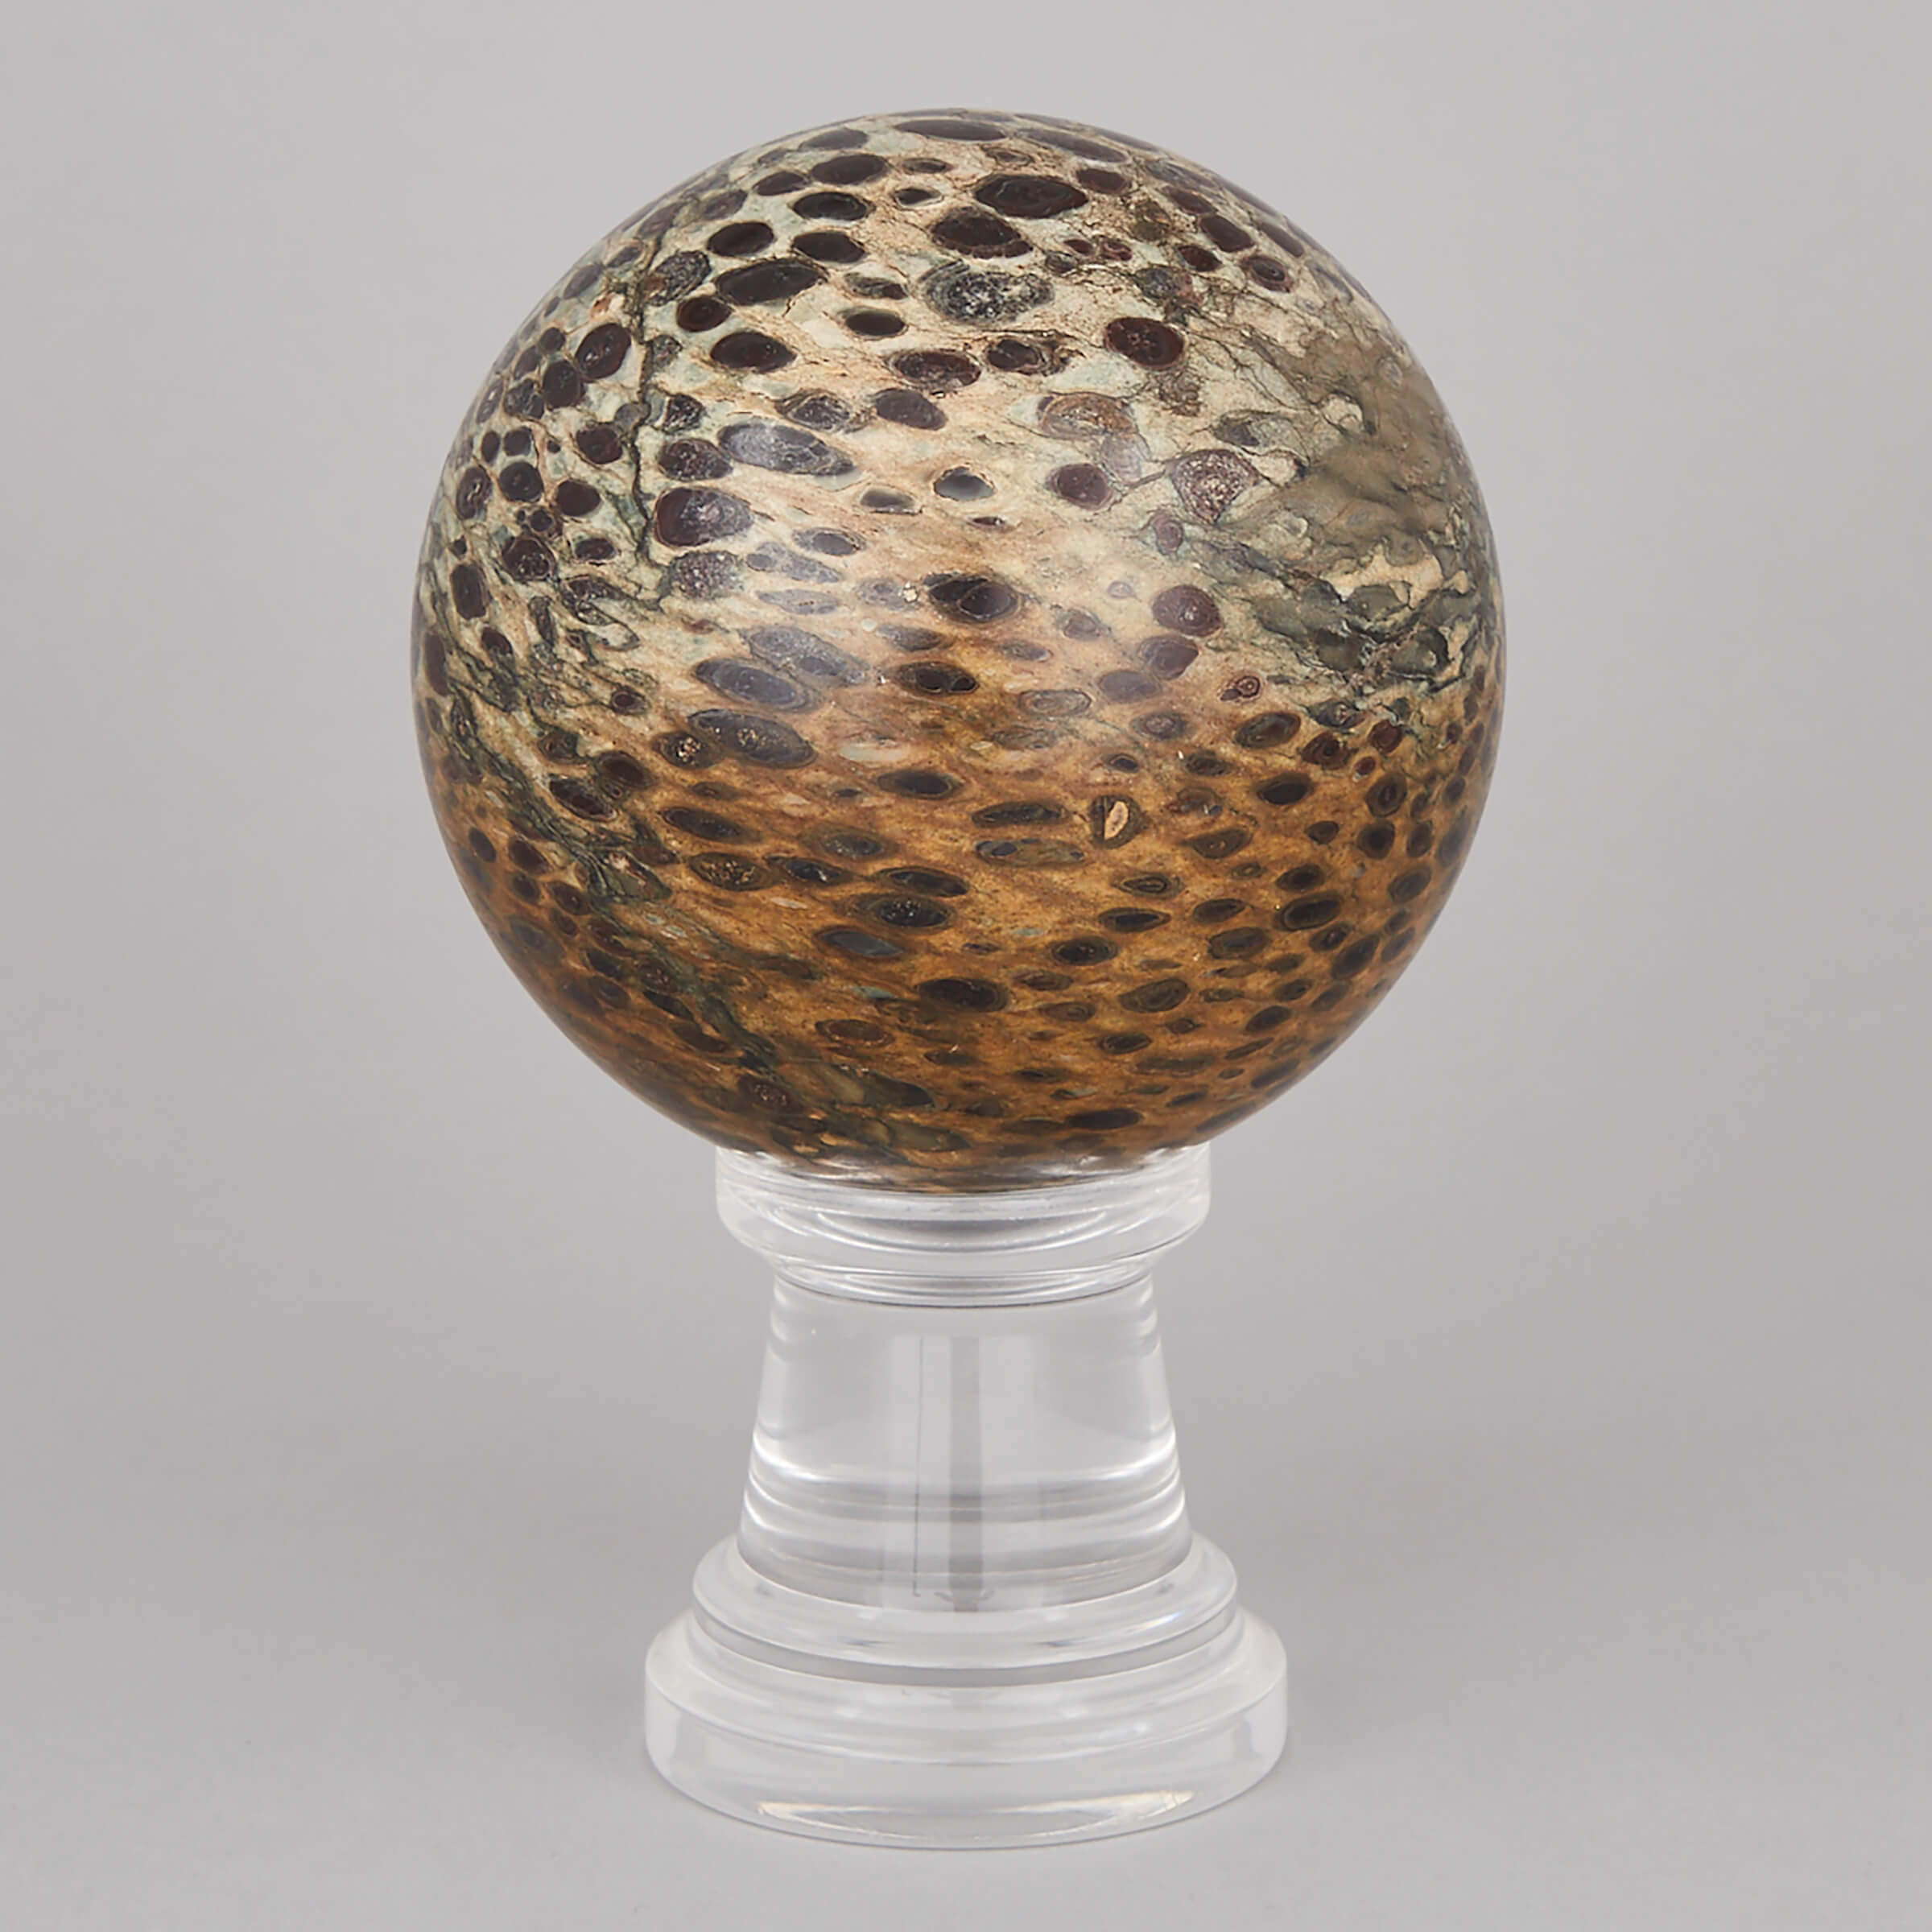 Leopard Skin Jasper Turned Mineral Ball, 20th century